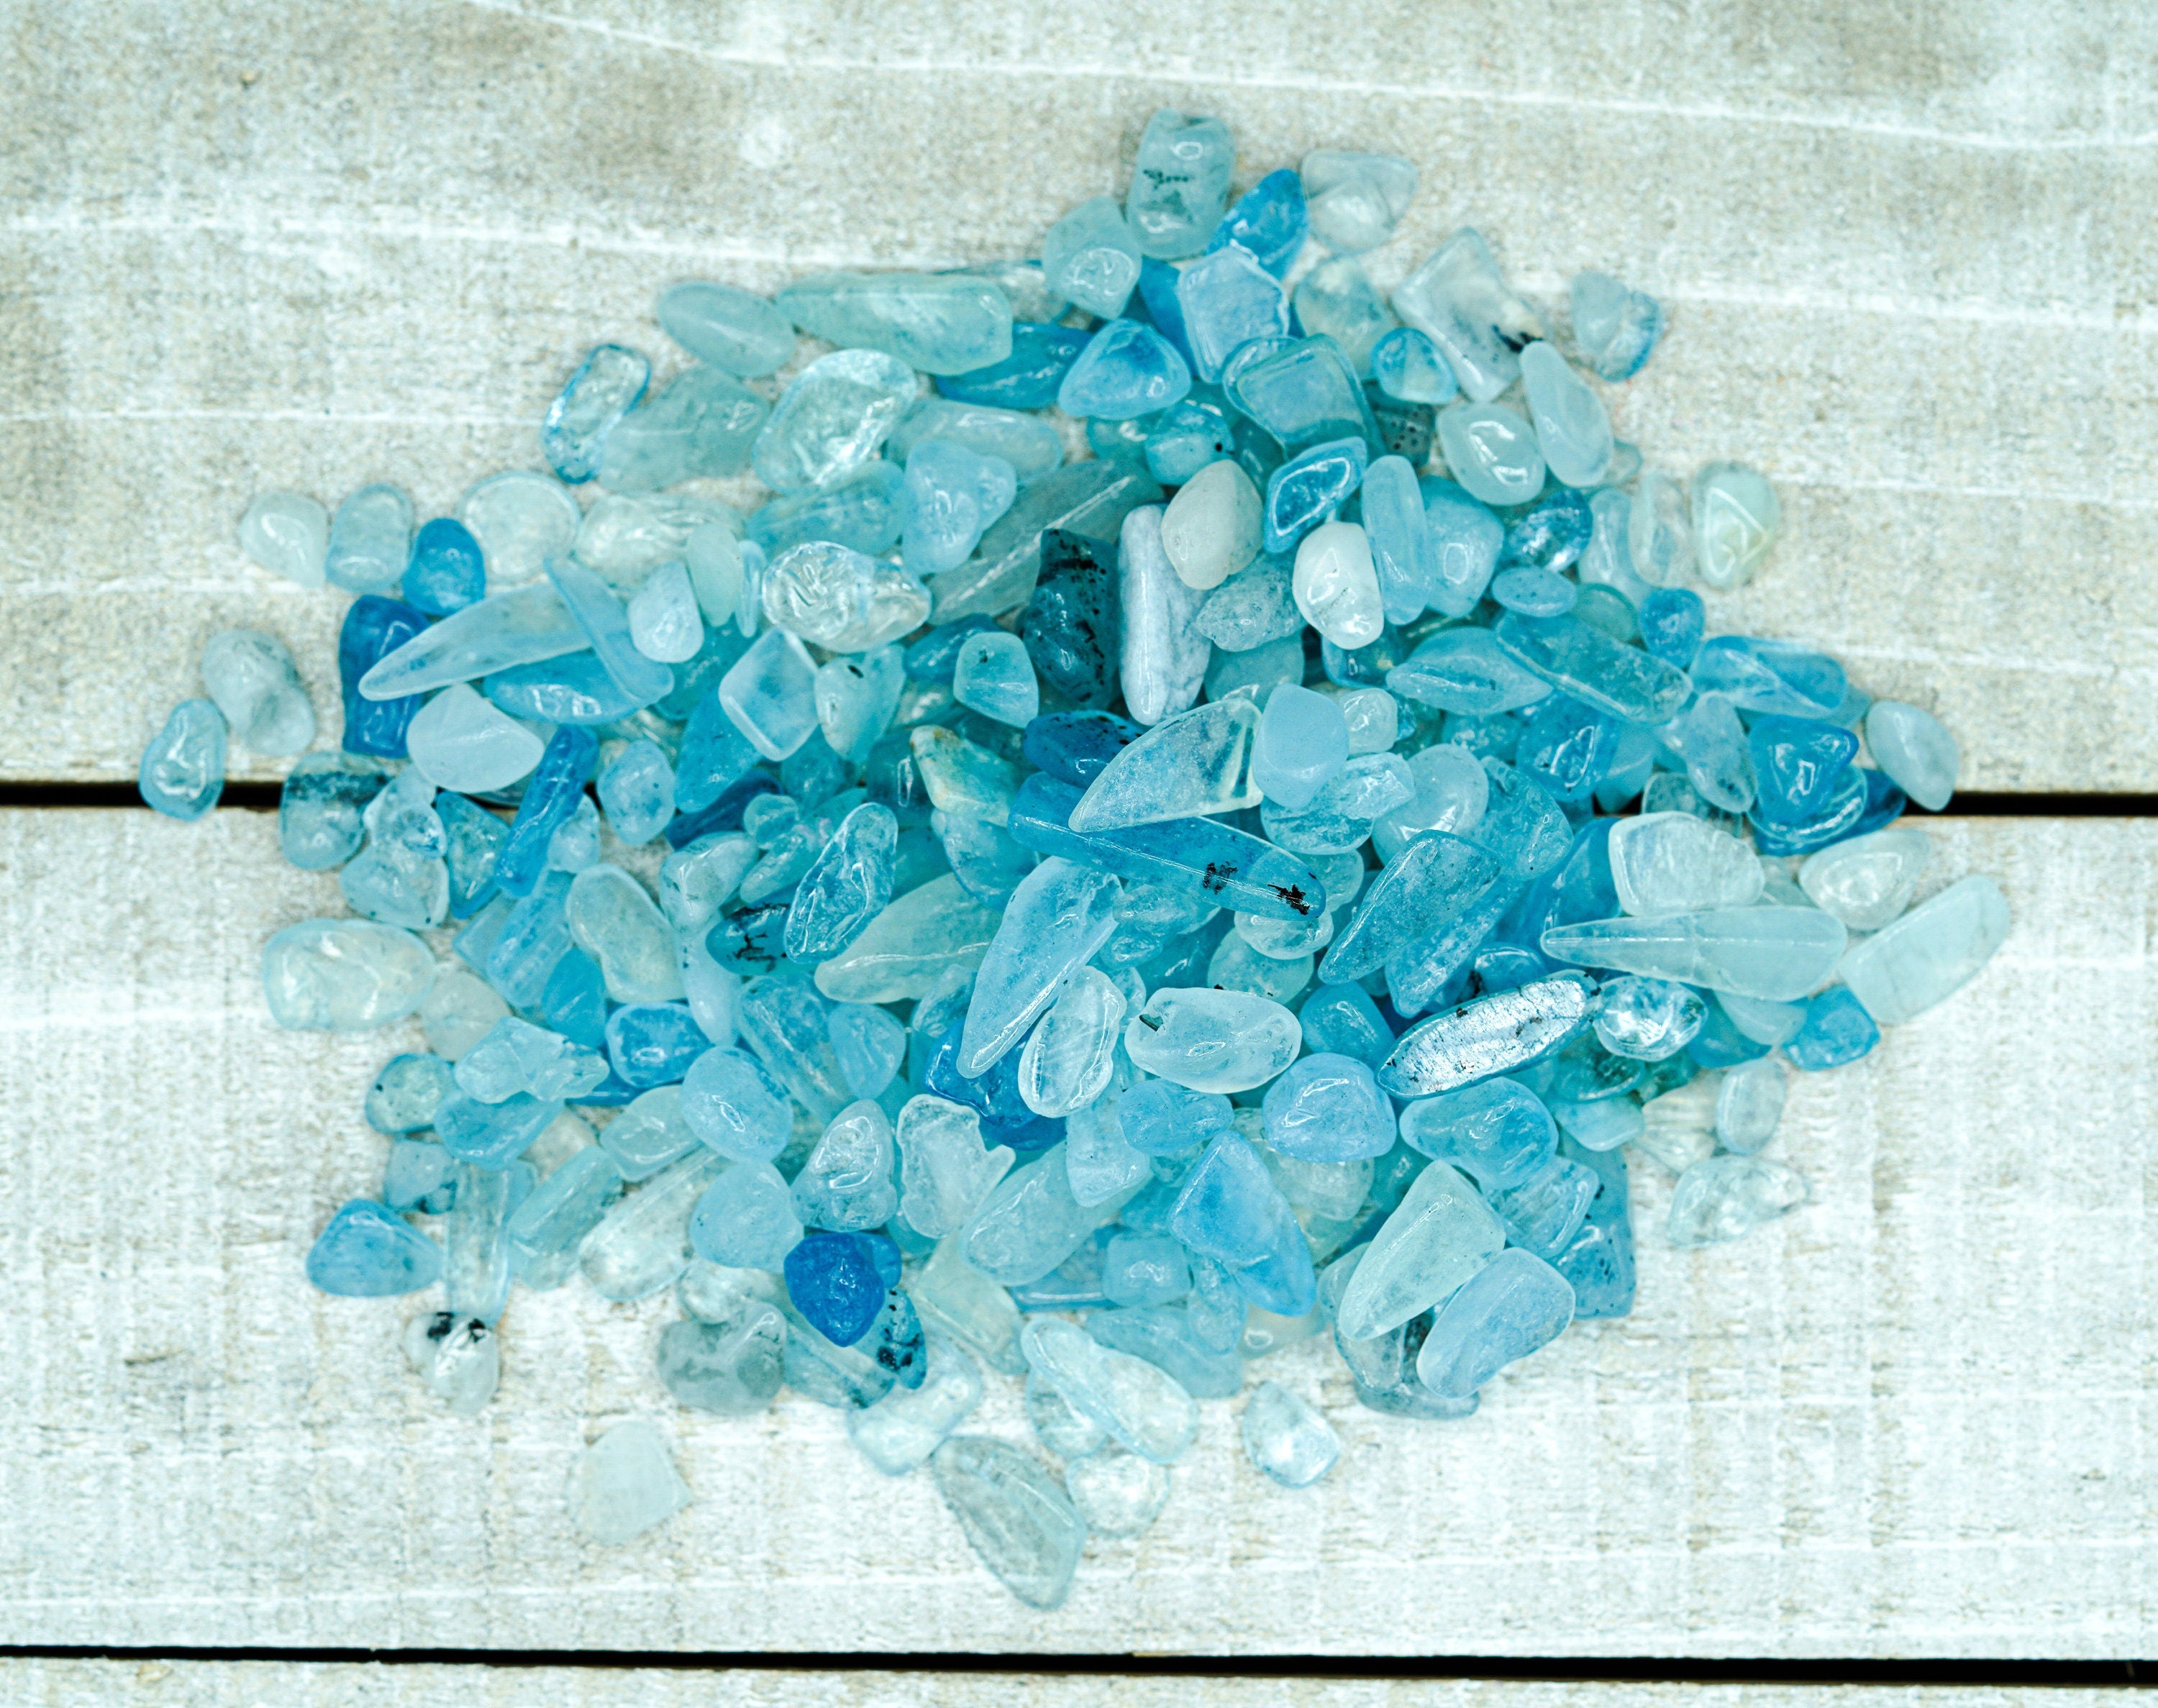 Aquamarine Tumbled Gemstone Chips